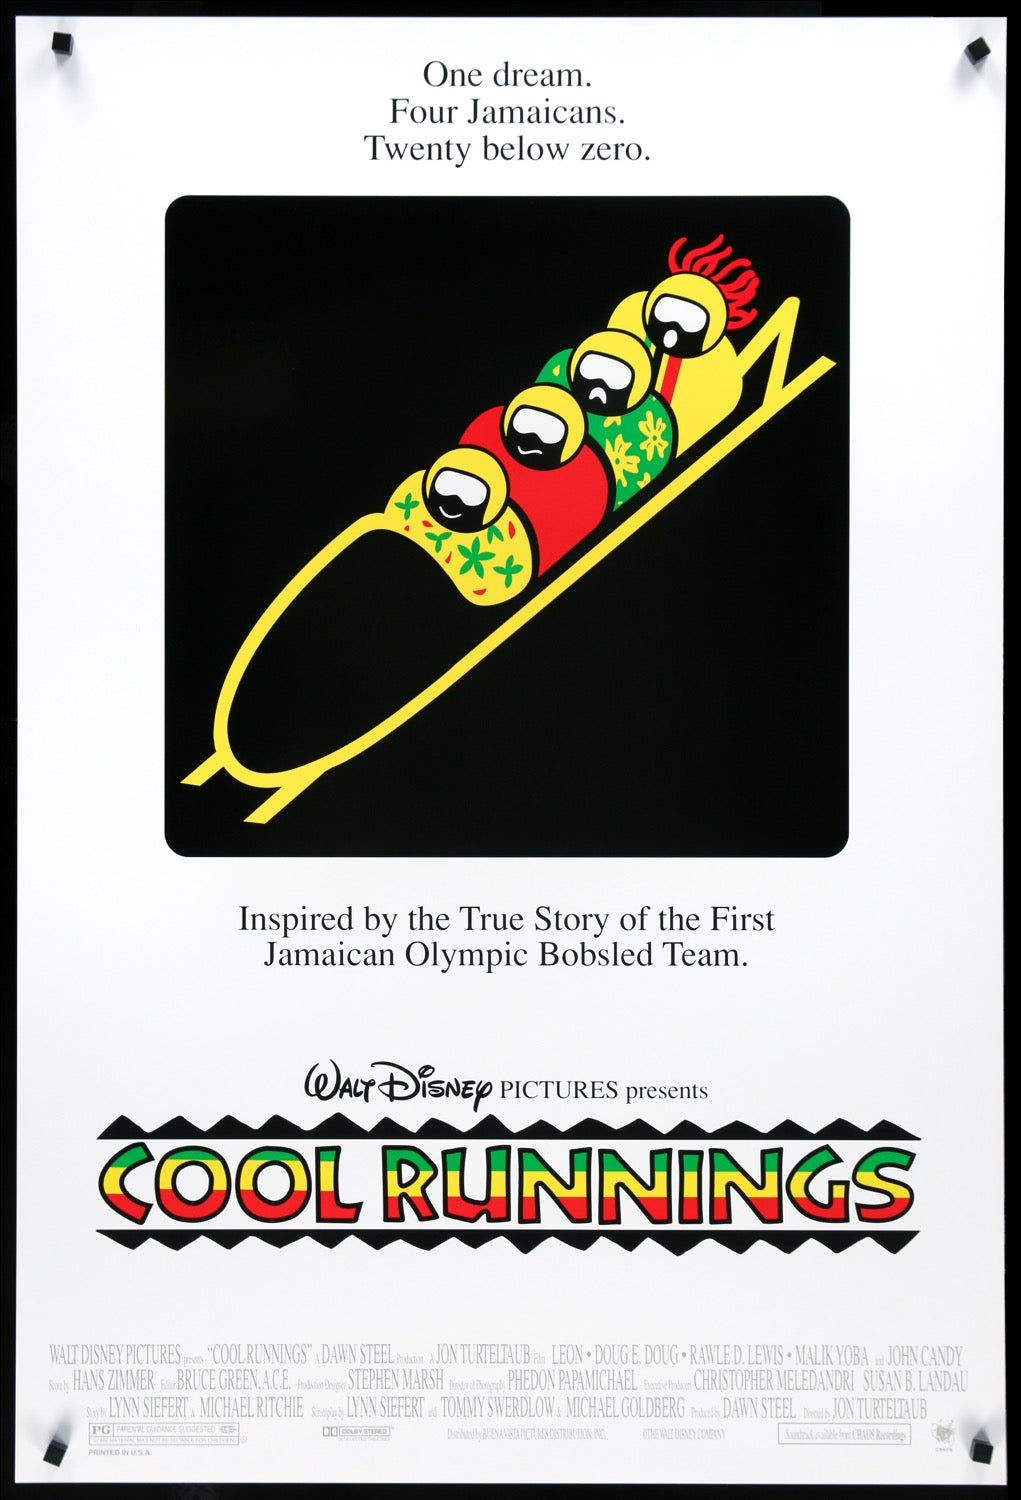 Cool Runnings (1993) original movie poster for sale at Original Film Art